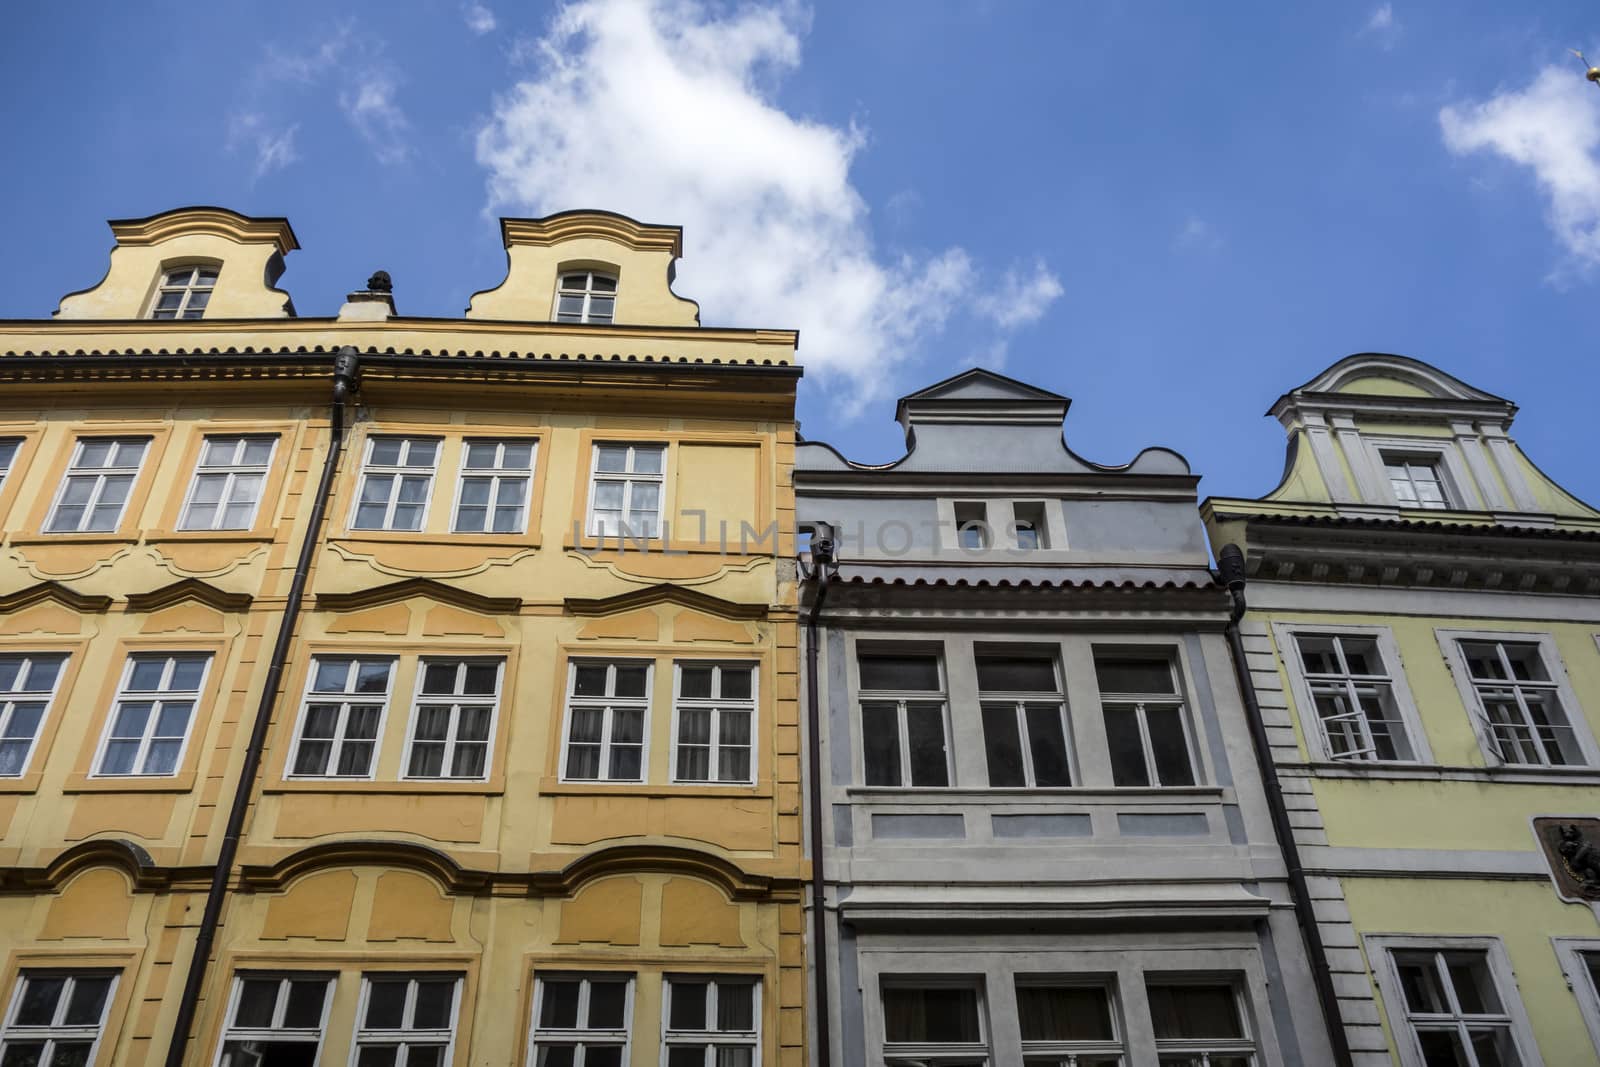 Windows of old buildings in Prague 